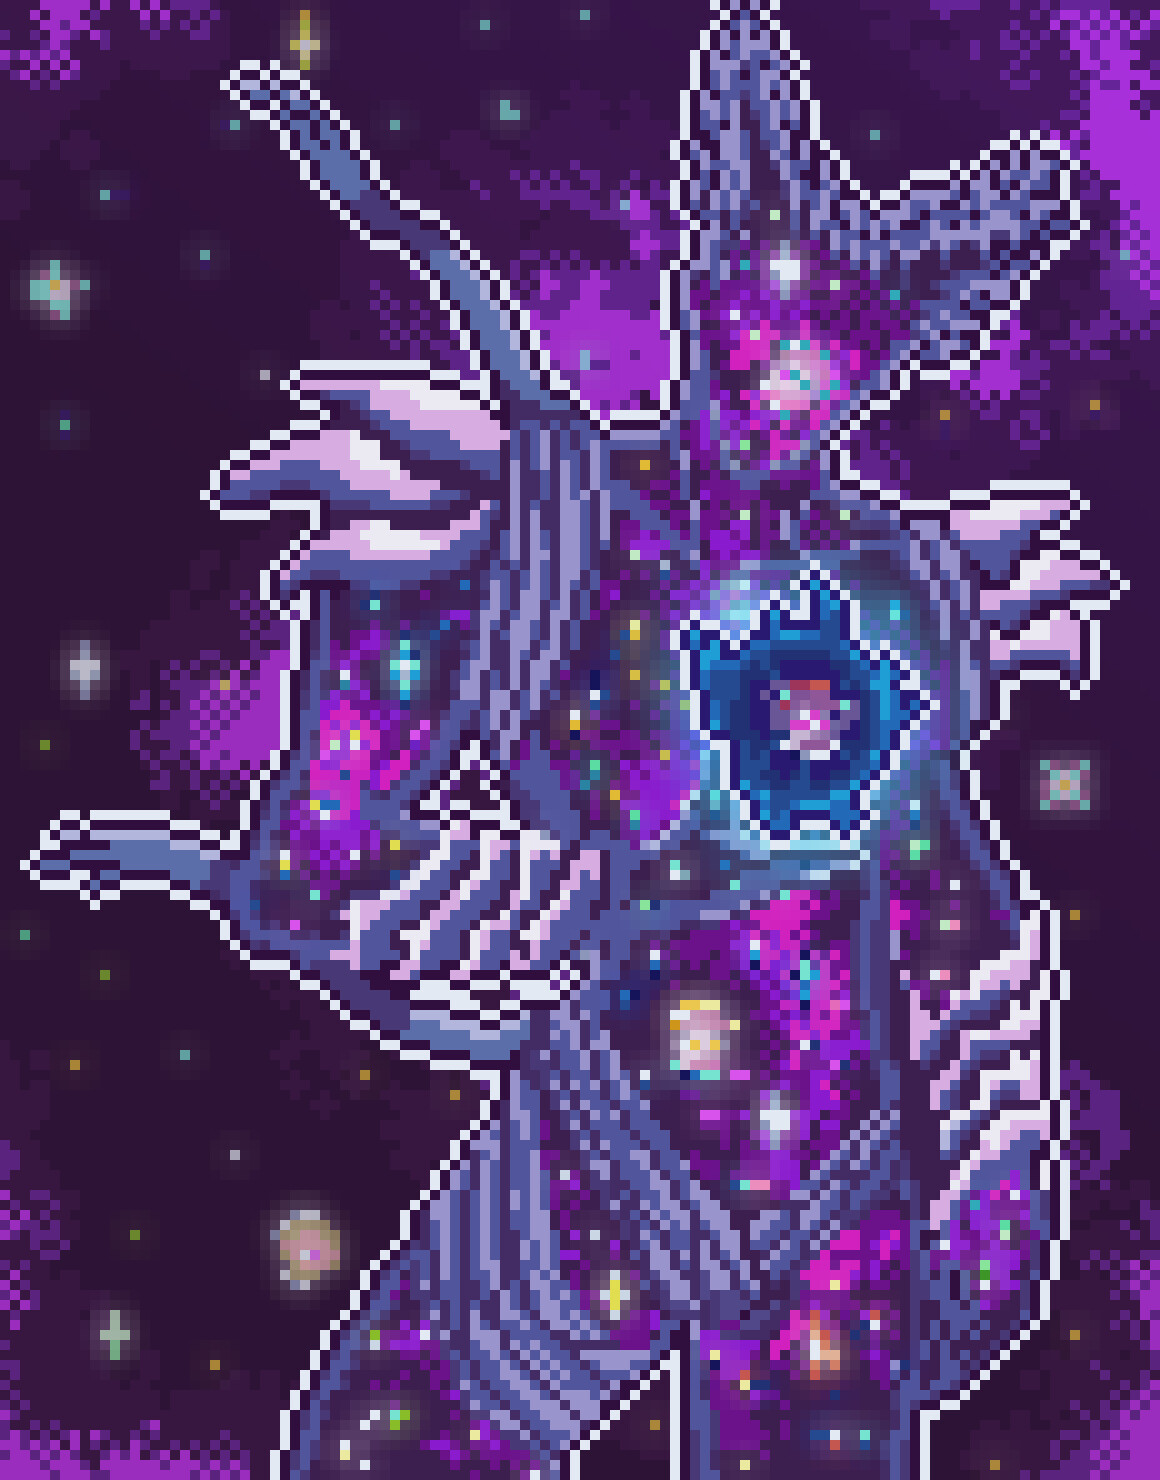 Cosmic garou character artwork